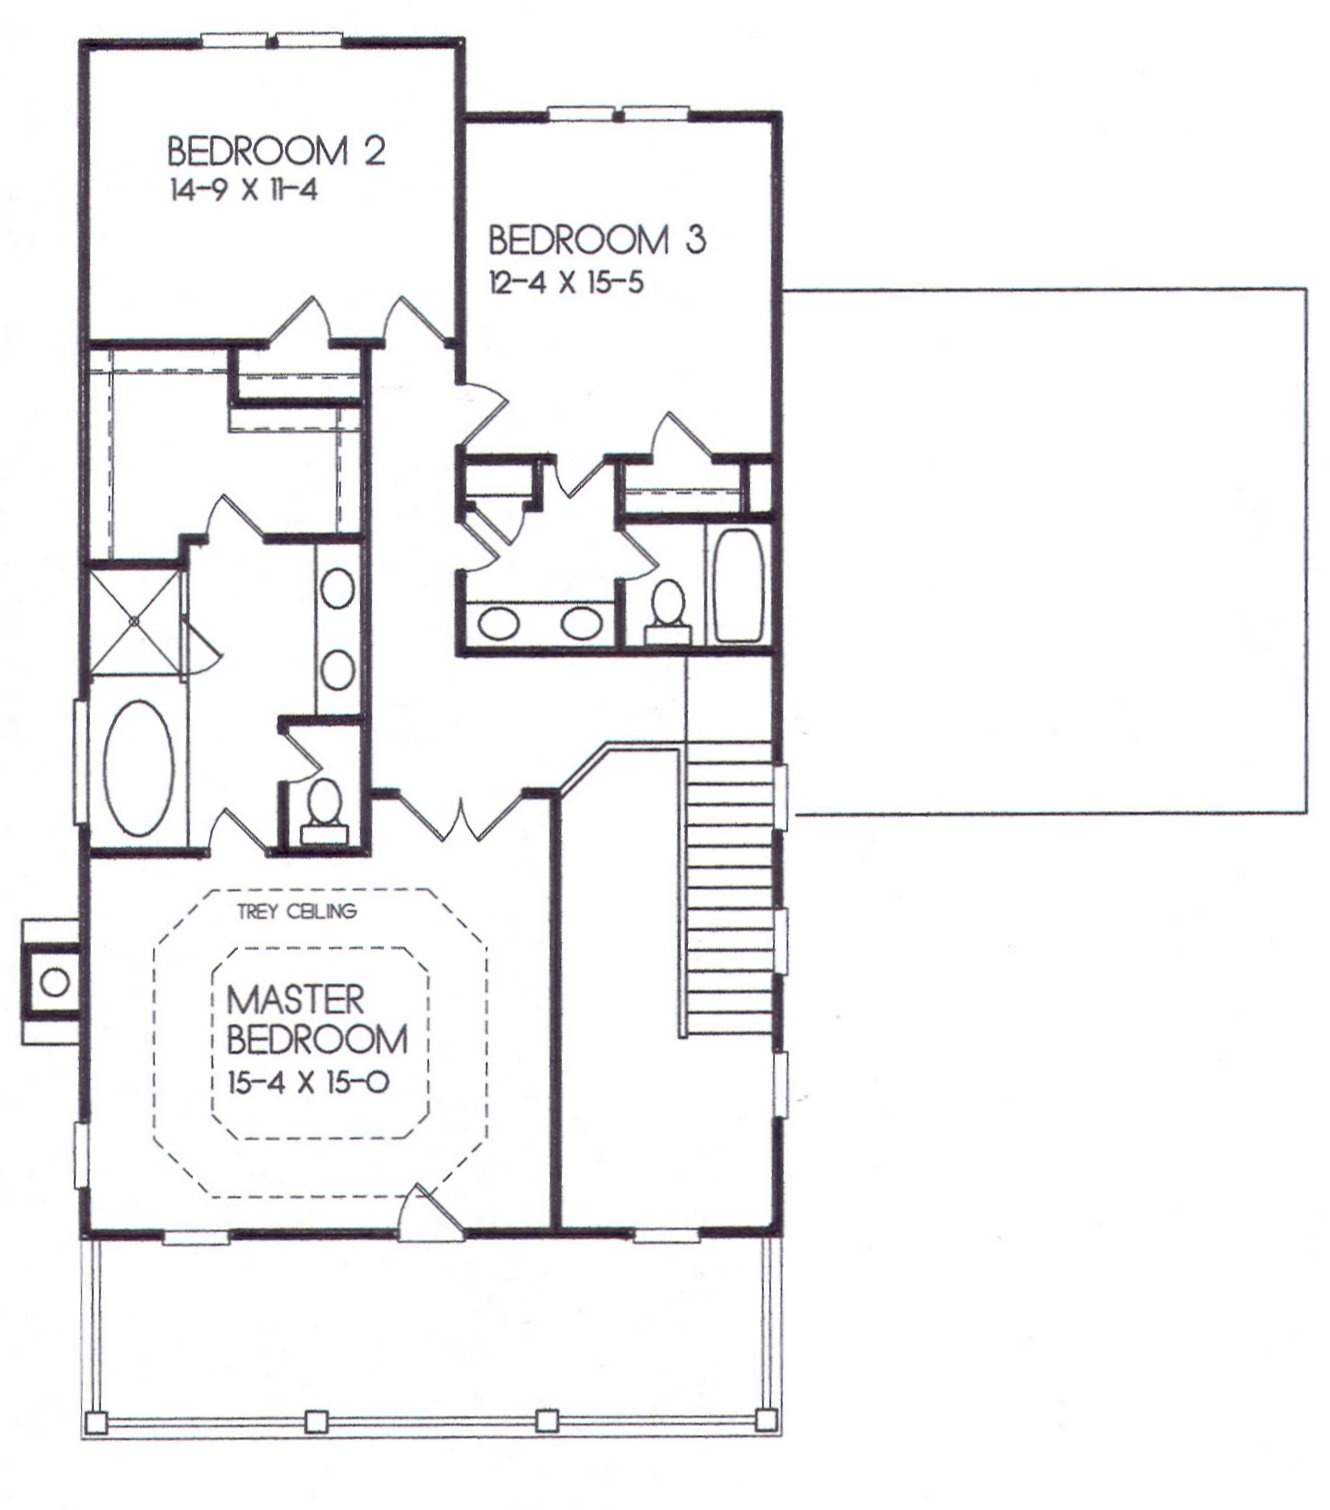 24-42 second floor plan